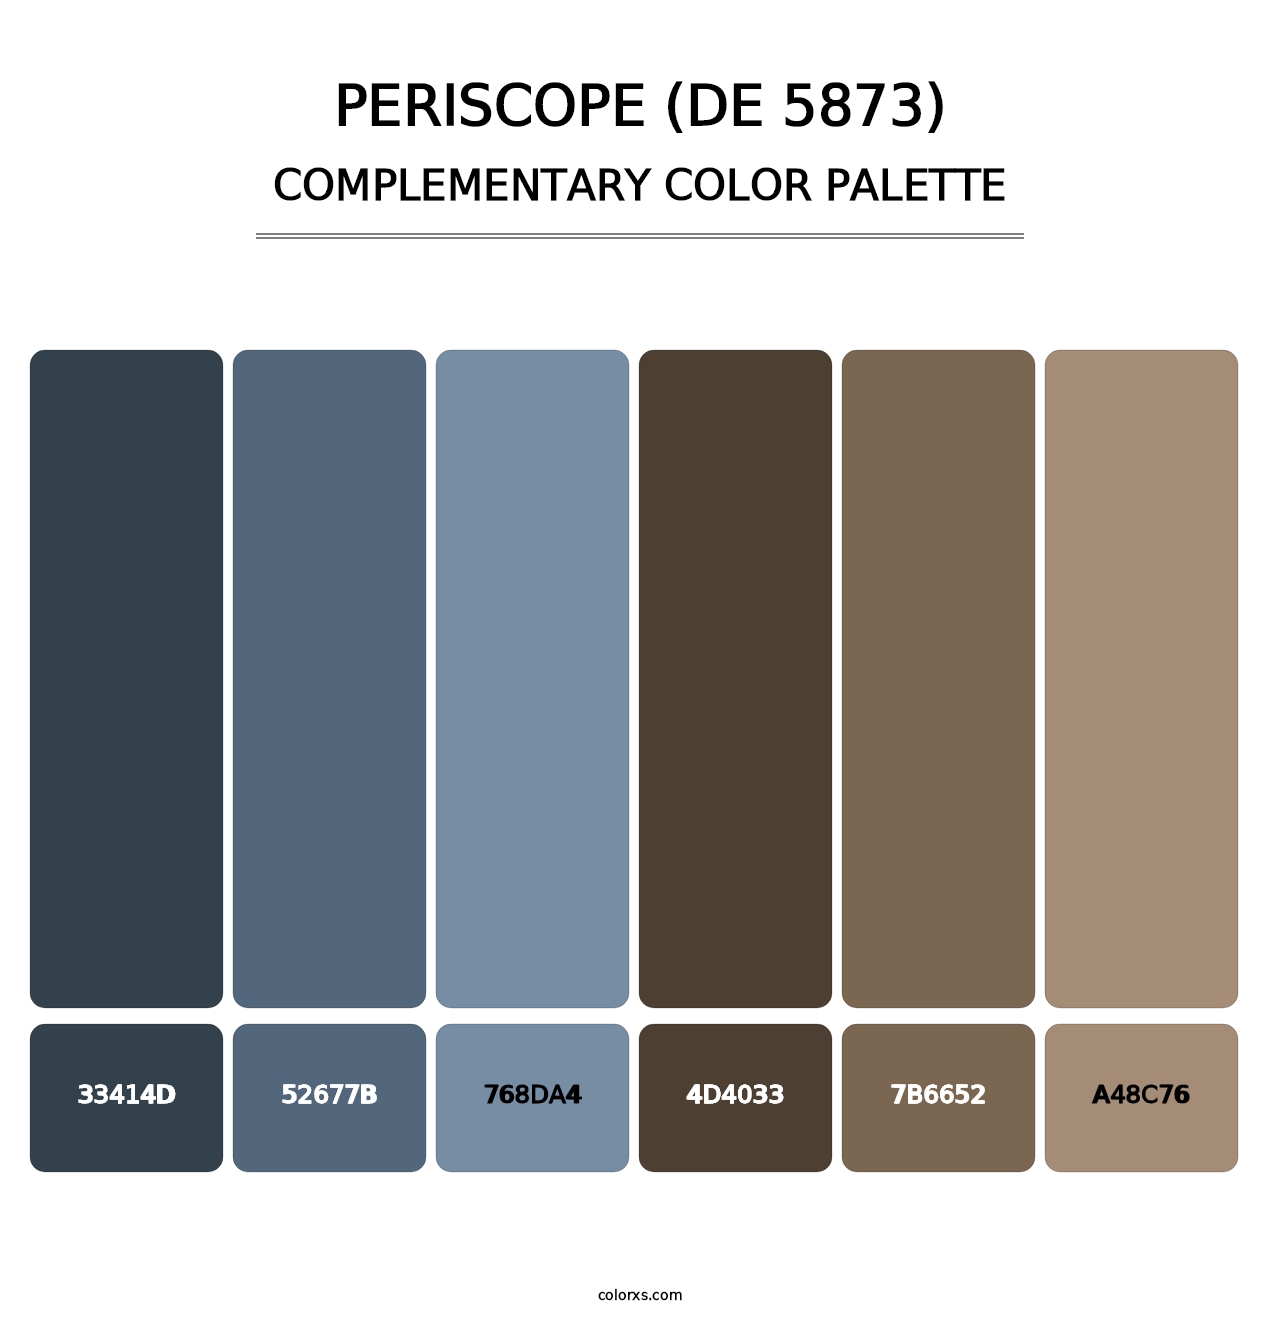 Periscope (DE 5873) - Complementary Color Palette